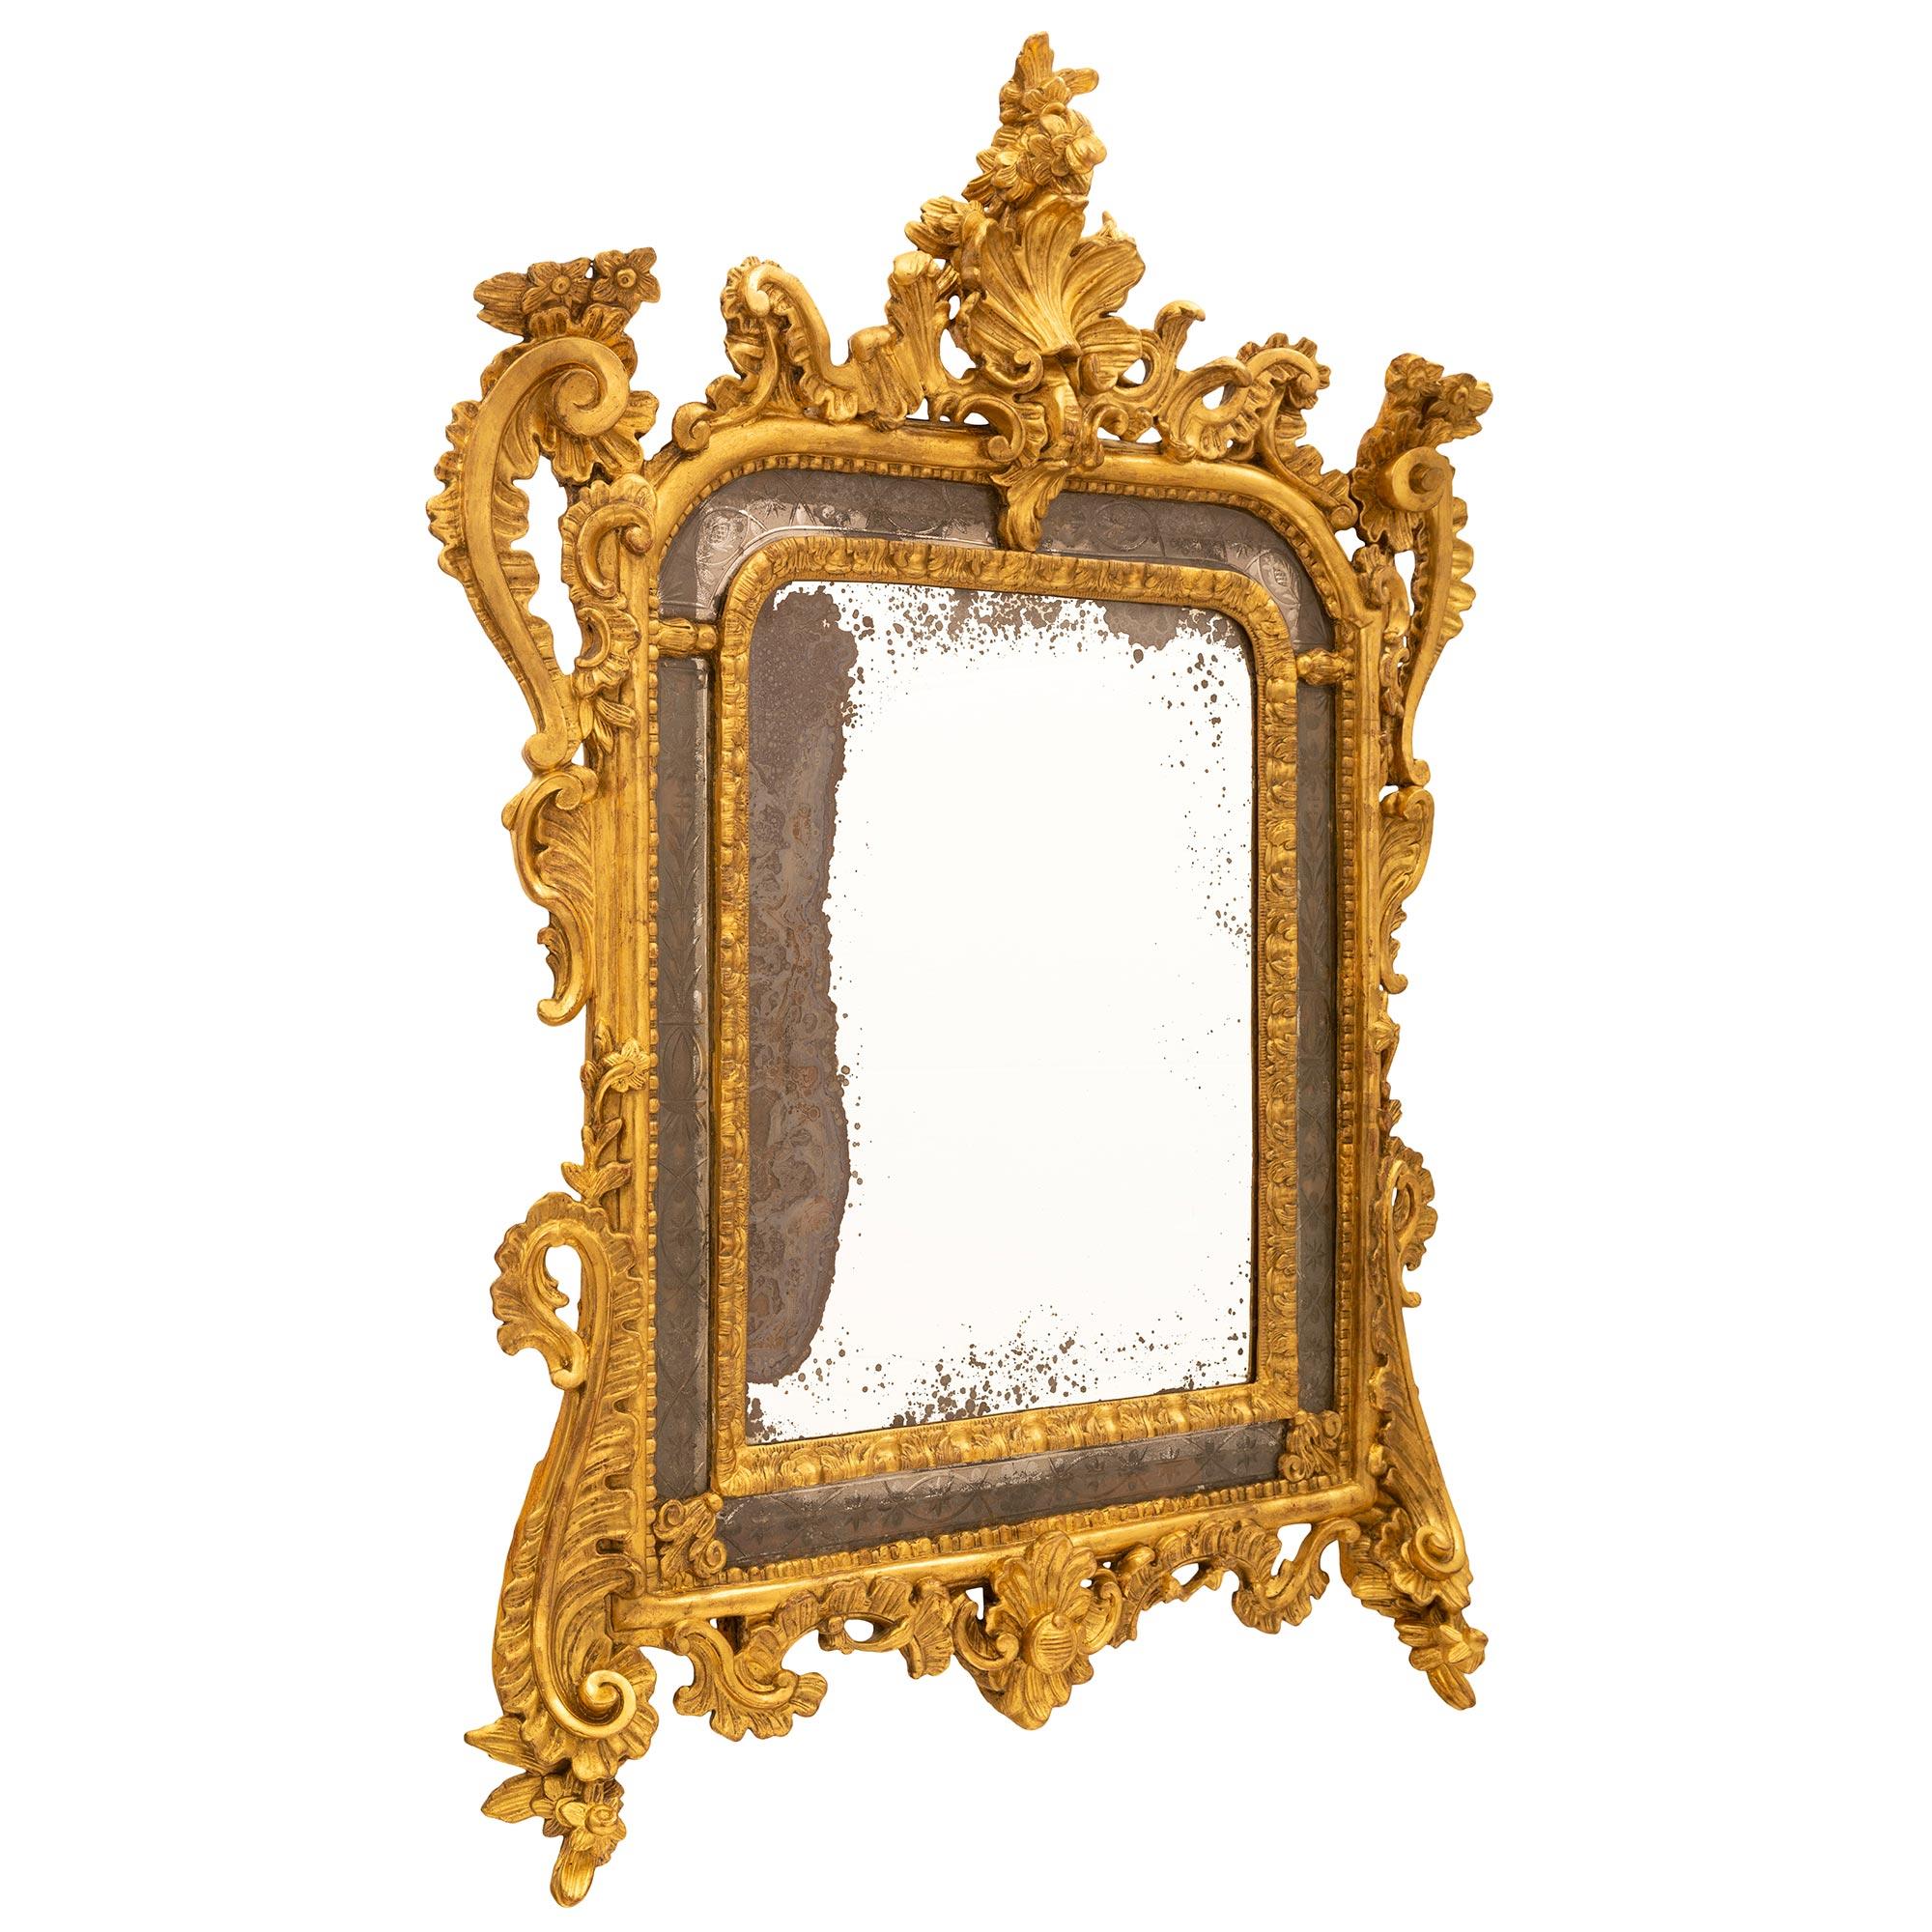 Remarquable miroir en bois doré à double encadrement, de style baroque italien du XVIIIe siècle. Le miroir a conservé toutes ses plaques d'origine, la plaque centrale étant encadrée d'une bordure feuillagée finement sculptée et les plaques